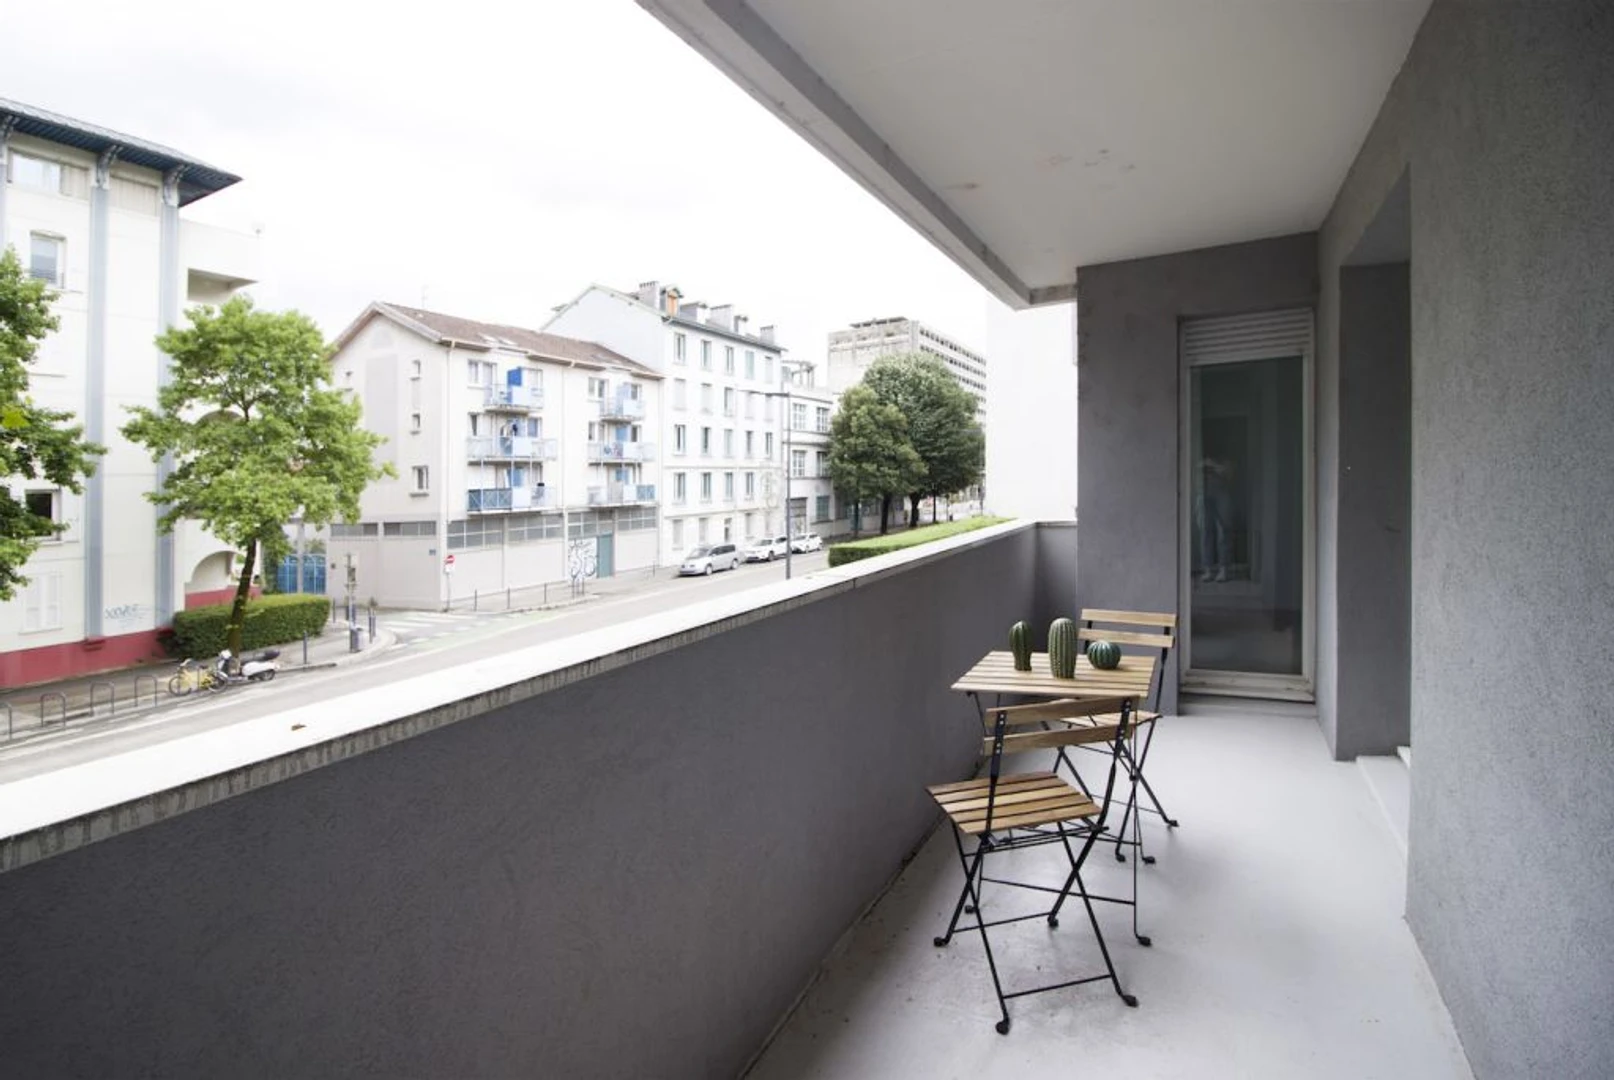 Grenoble de çift kişilik yataklı kiralık oda